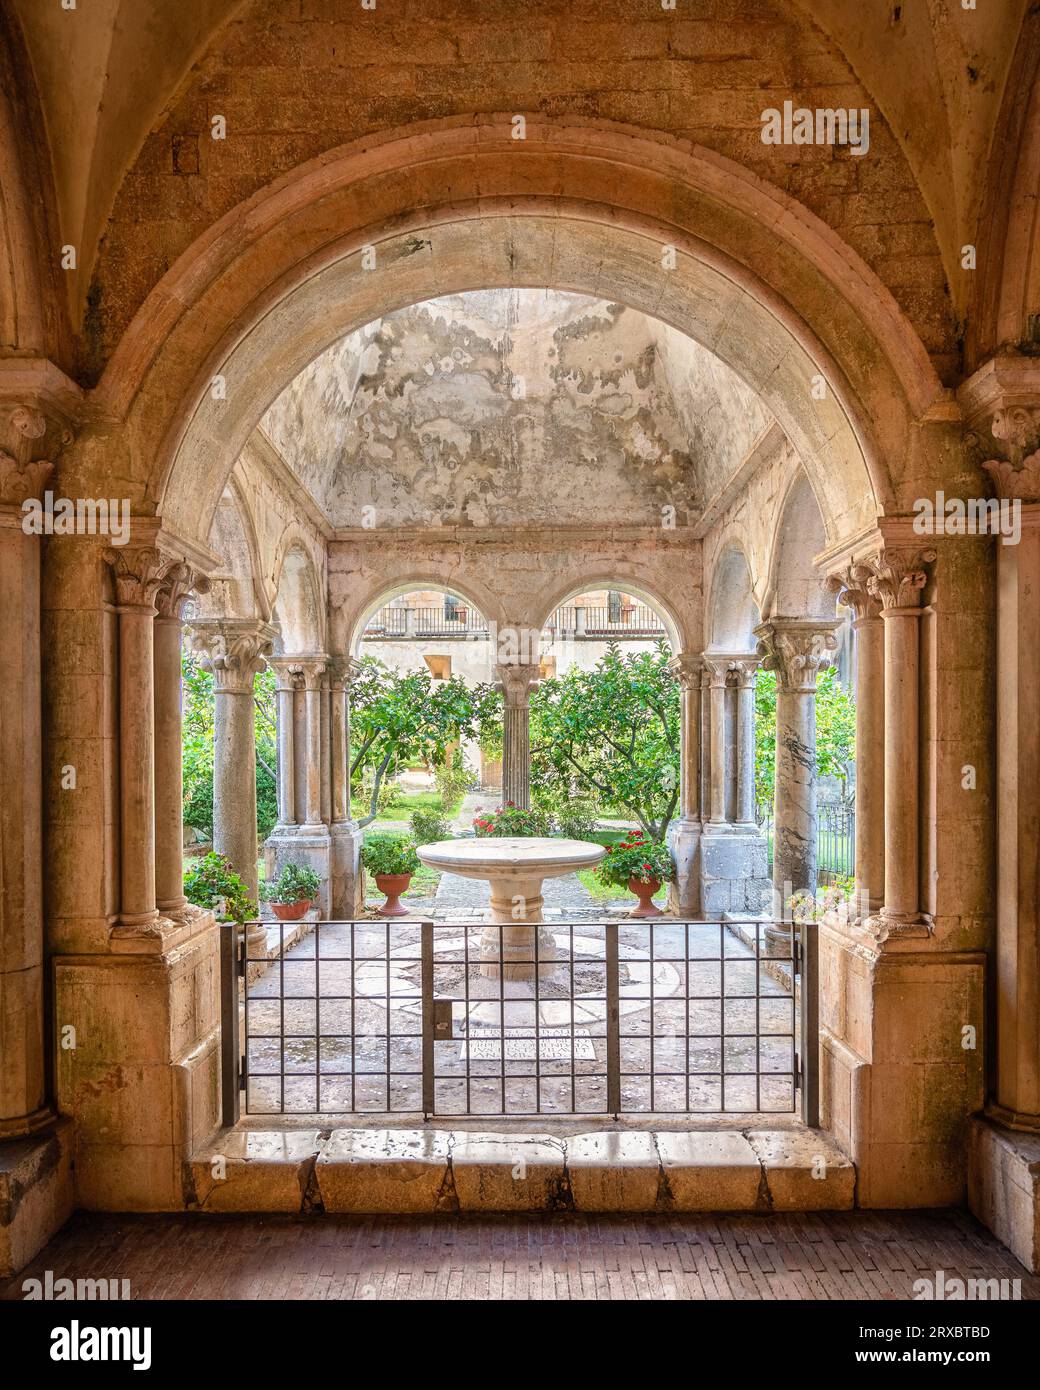 Le cloître de la merveilleuse abbaye de Fossanova près de la ville de Priverno, dans la province de Latina, Latium, italie. Banque D'Images